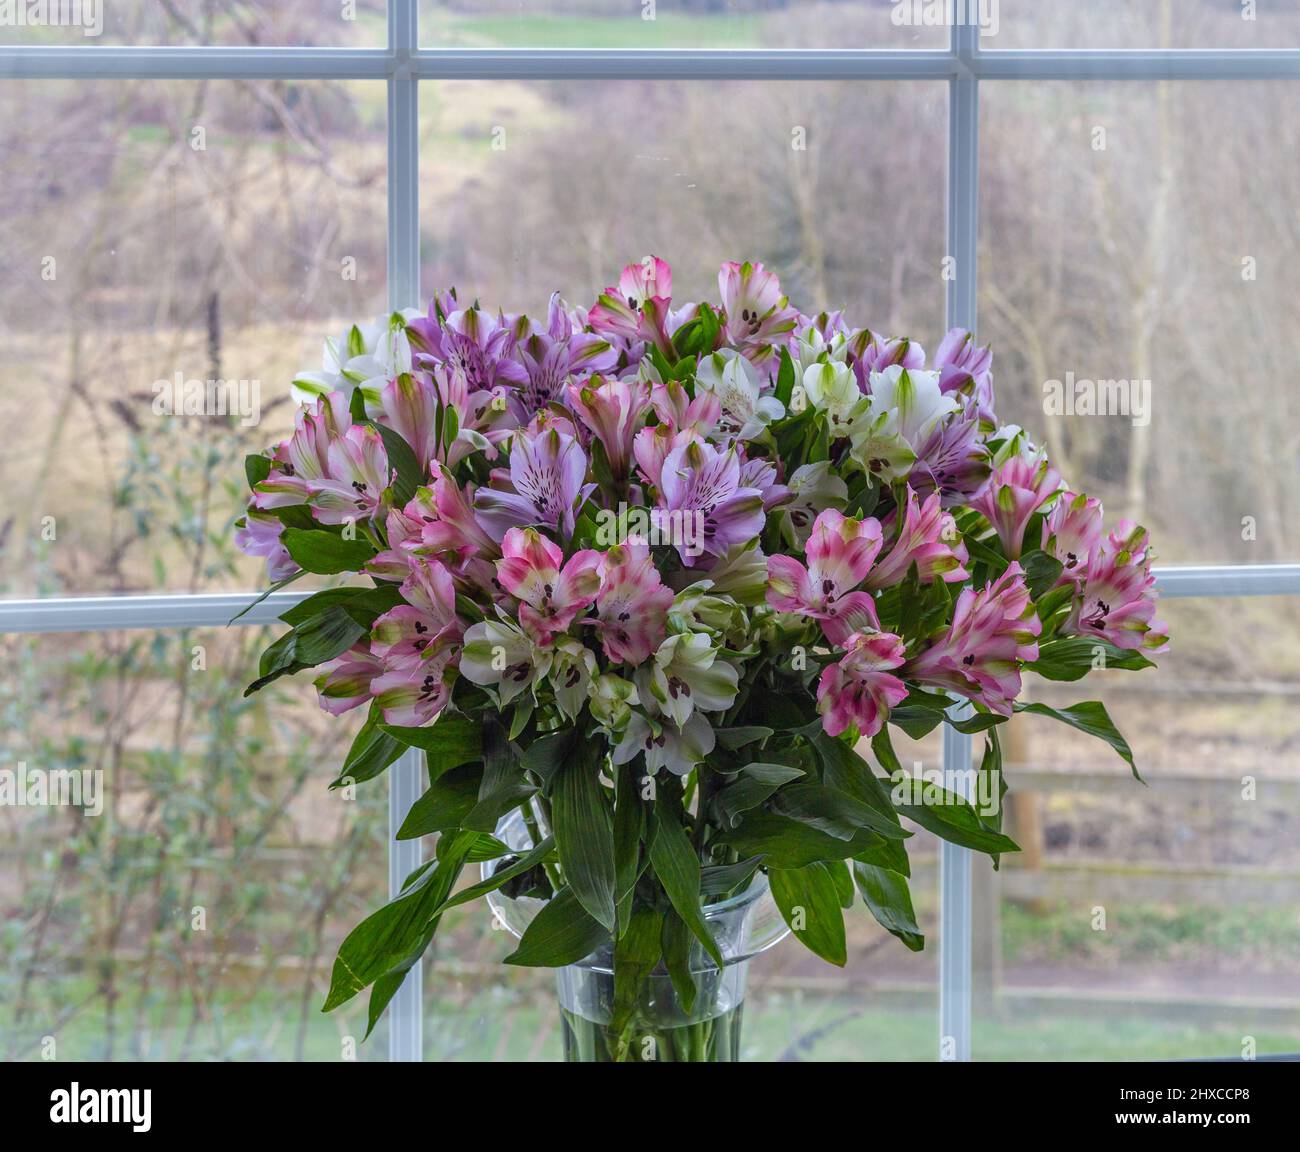 Gros plan de fleurs d'alstroemeria dans un vase sur un seuil de fenêtre. Banque D'Images